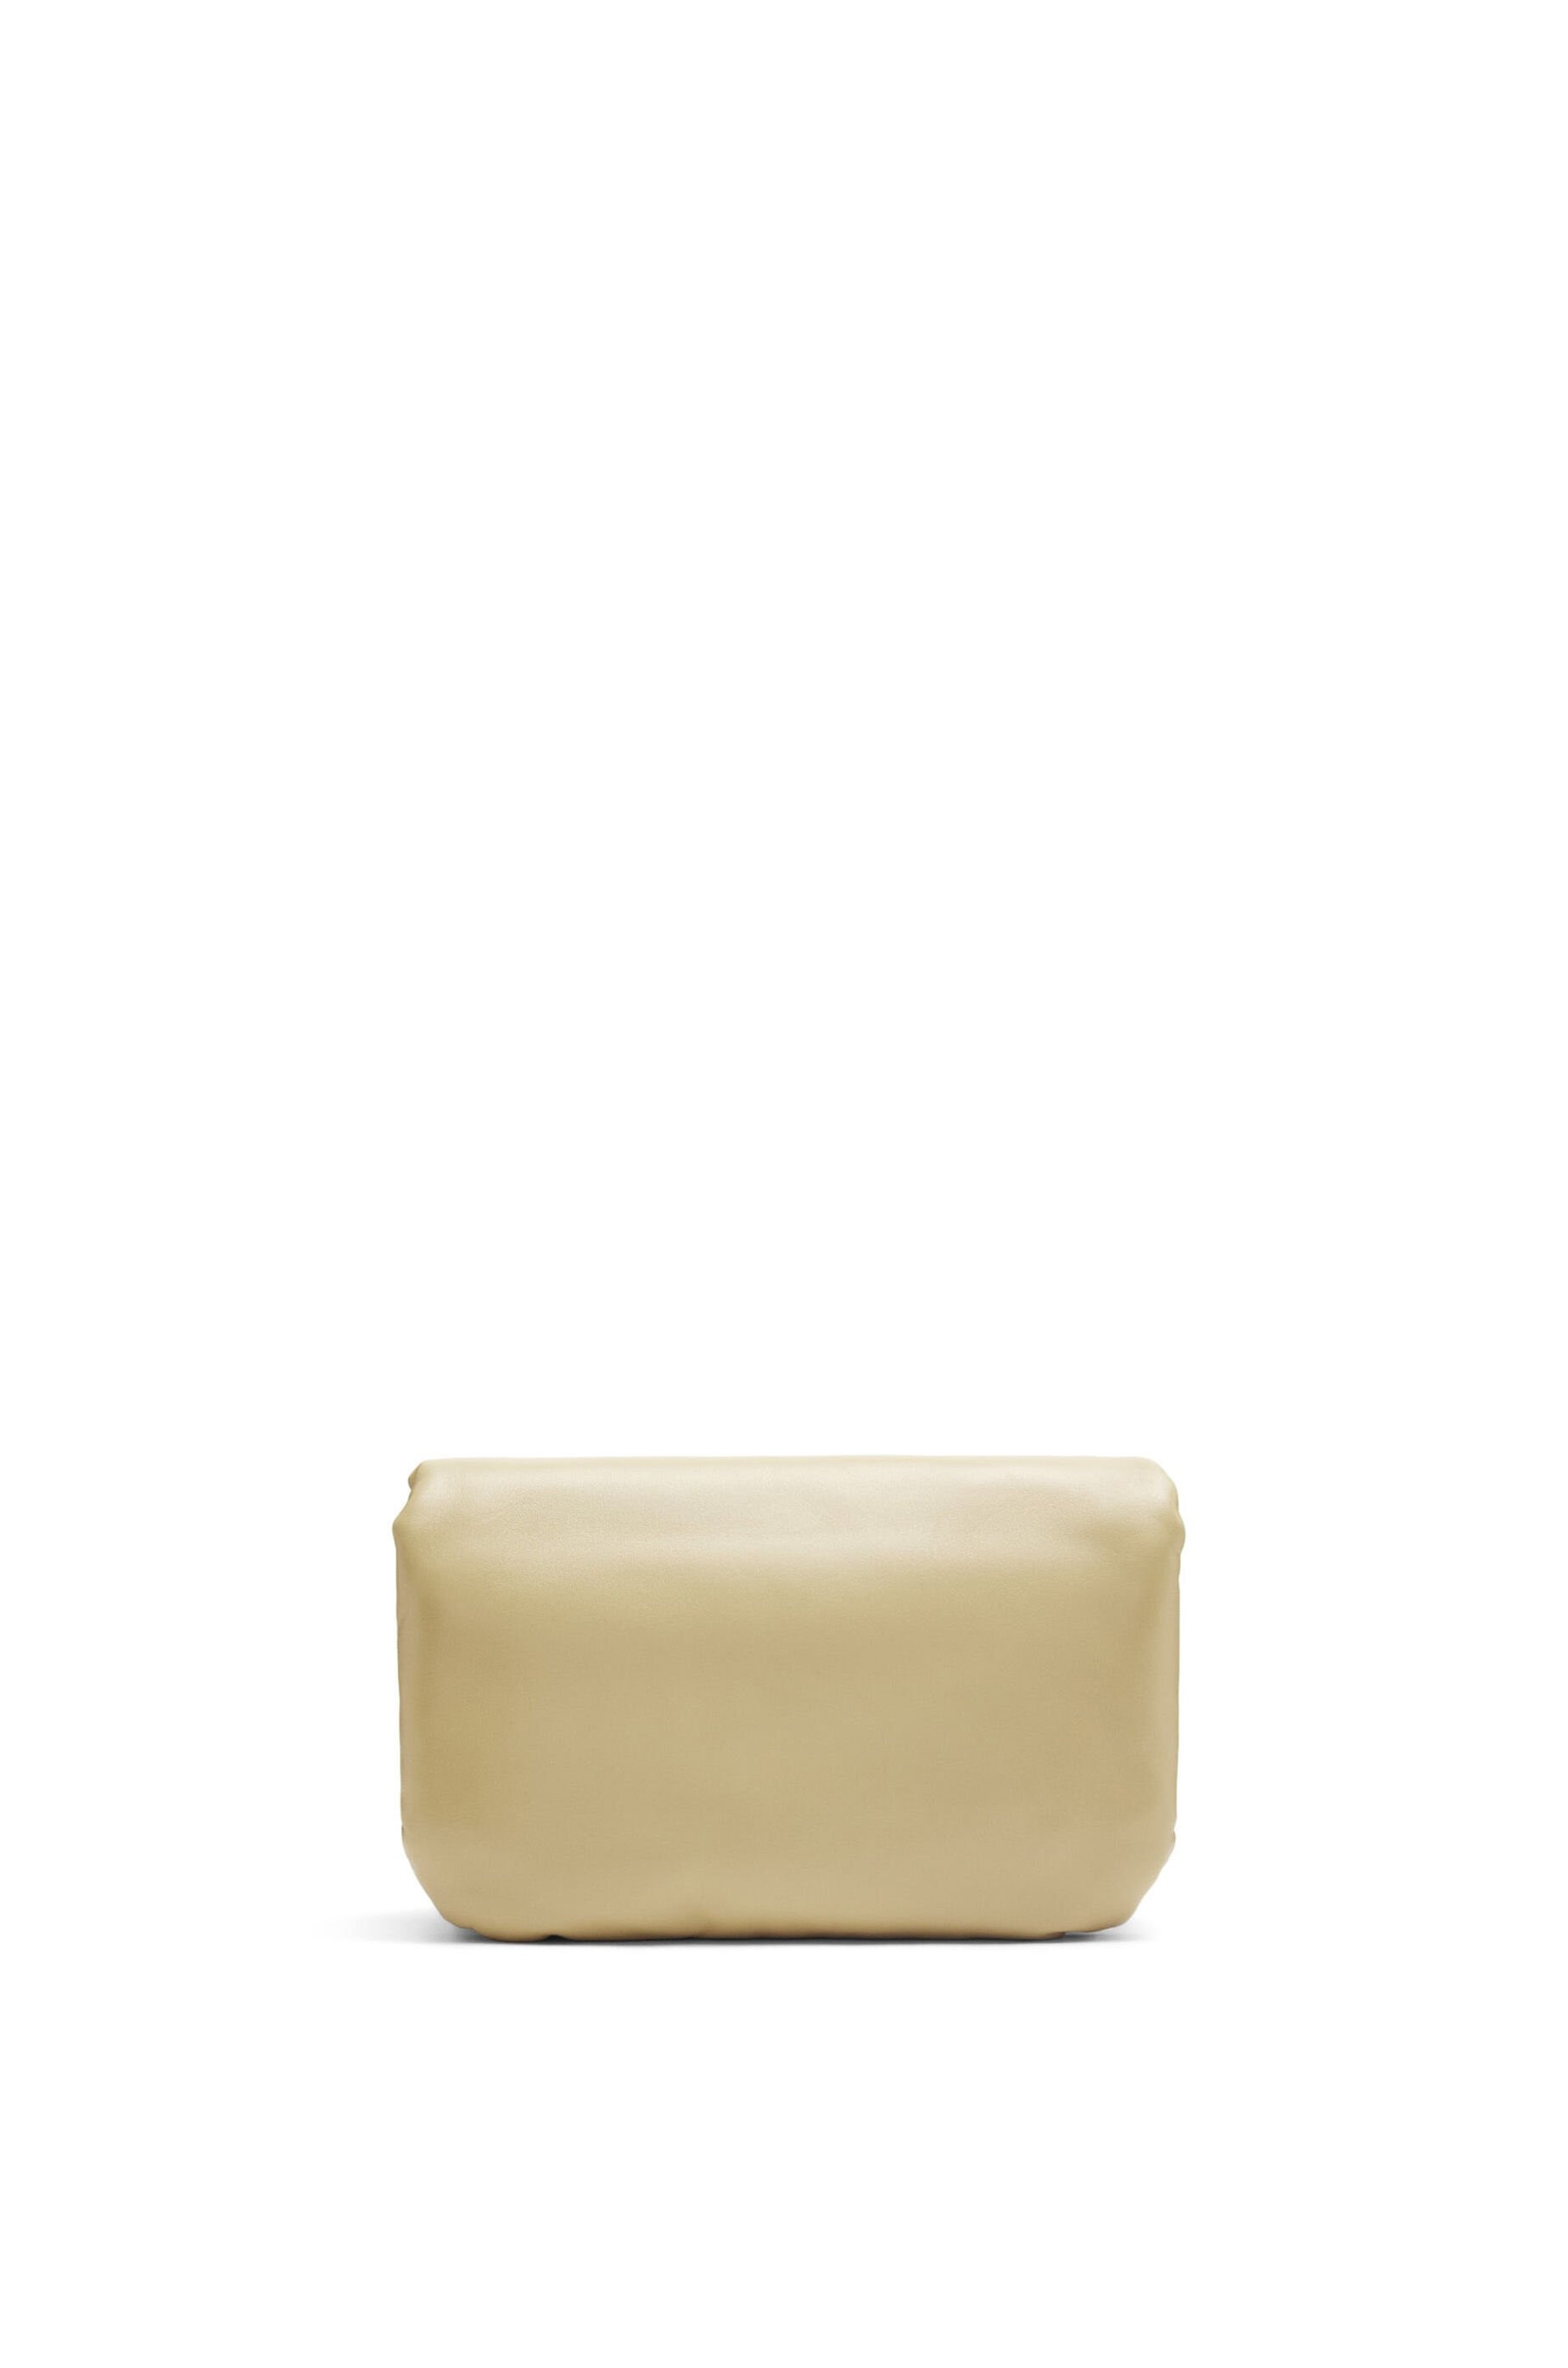 Goya Puffer Mini Leather Shoulder Bag in Beige - Loewe